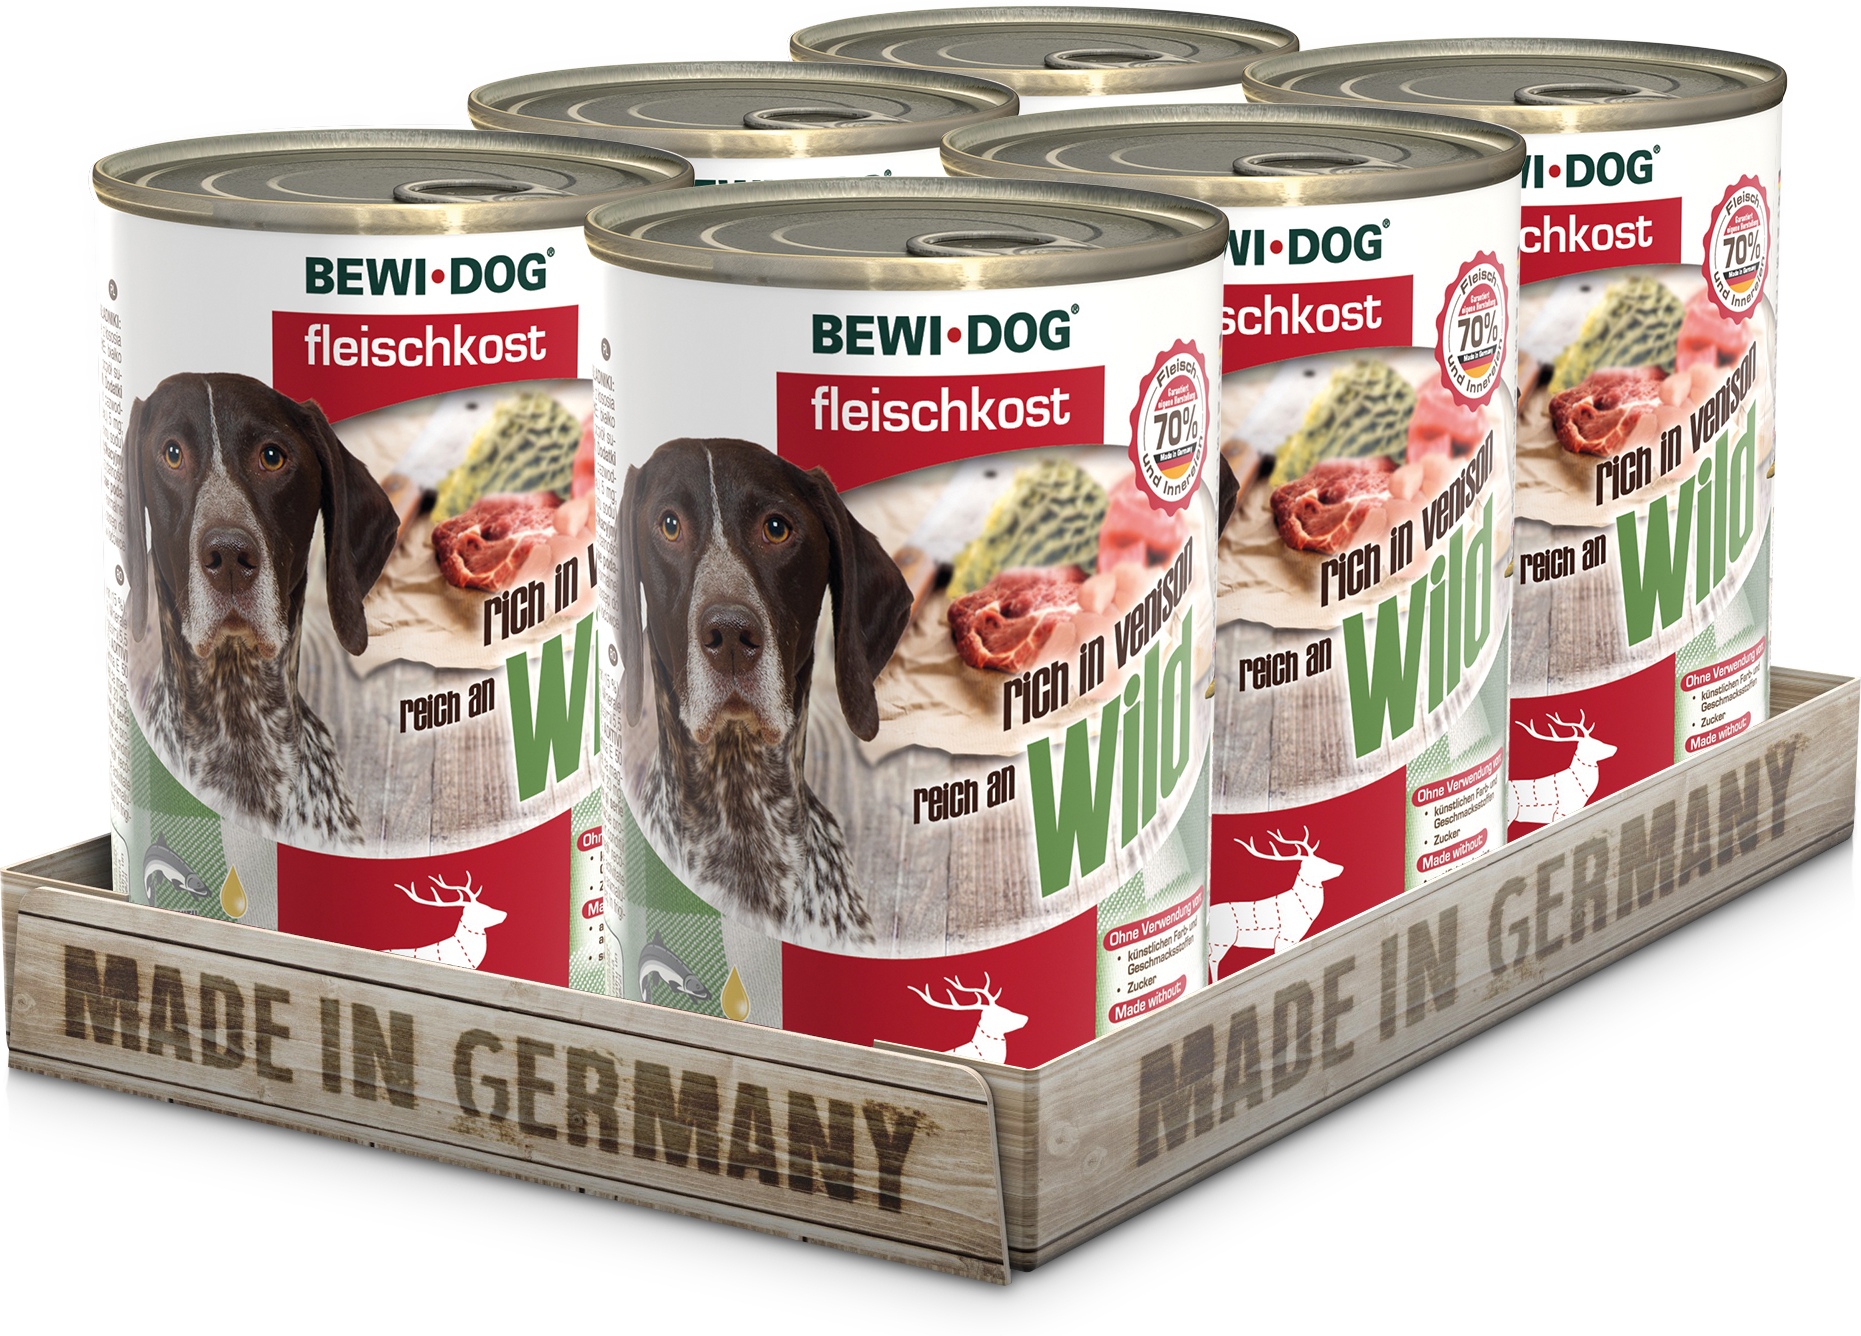 Bewi-Dog conservă bogată în carne pură de vânat